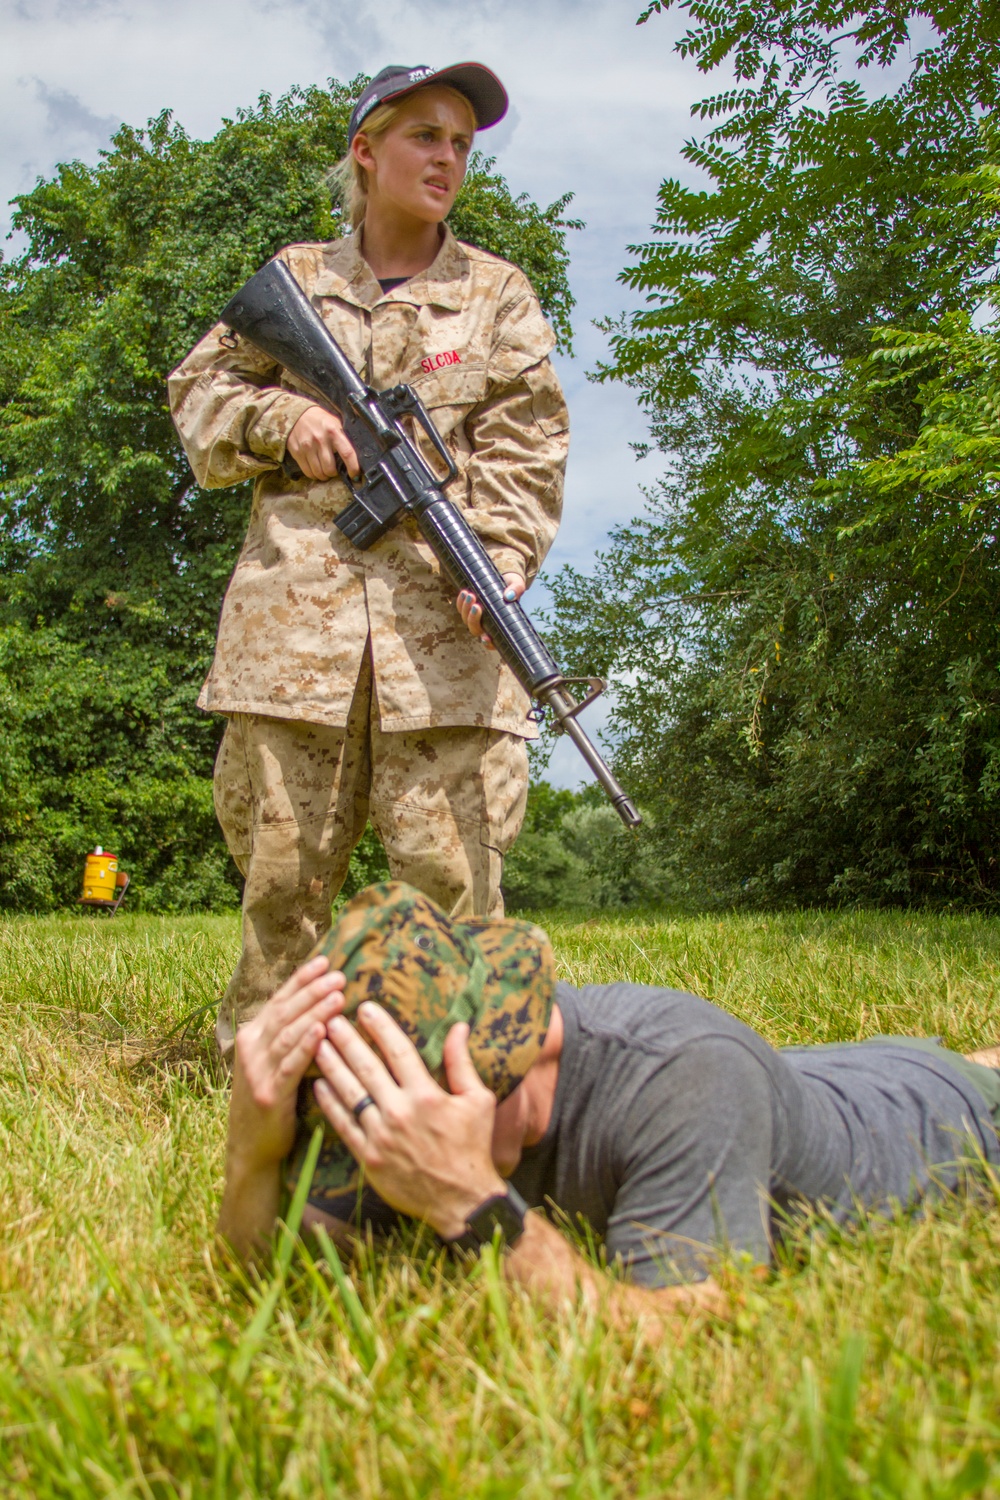 Student learns Marine Corps leadership via training scenarios